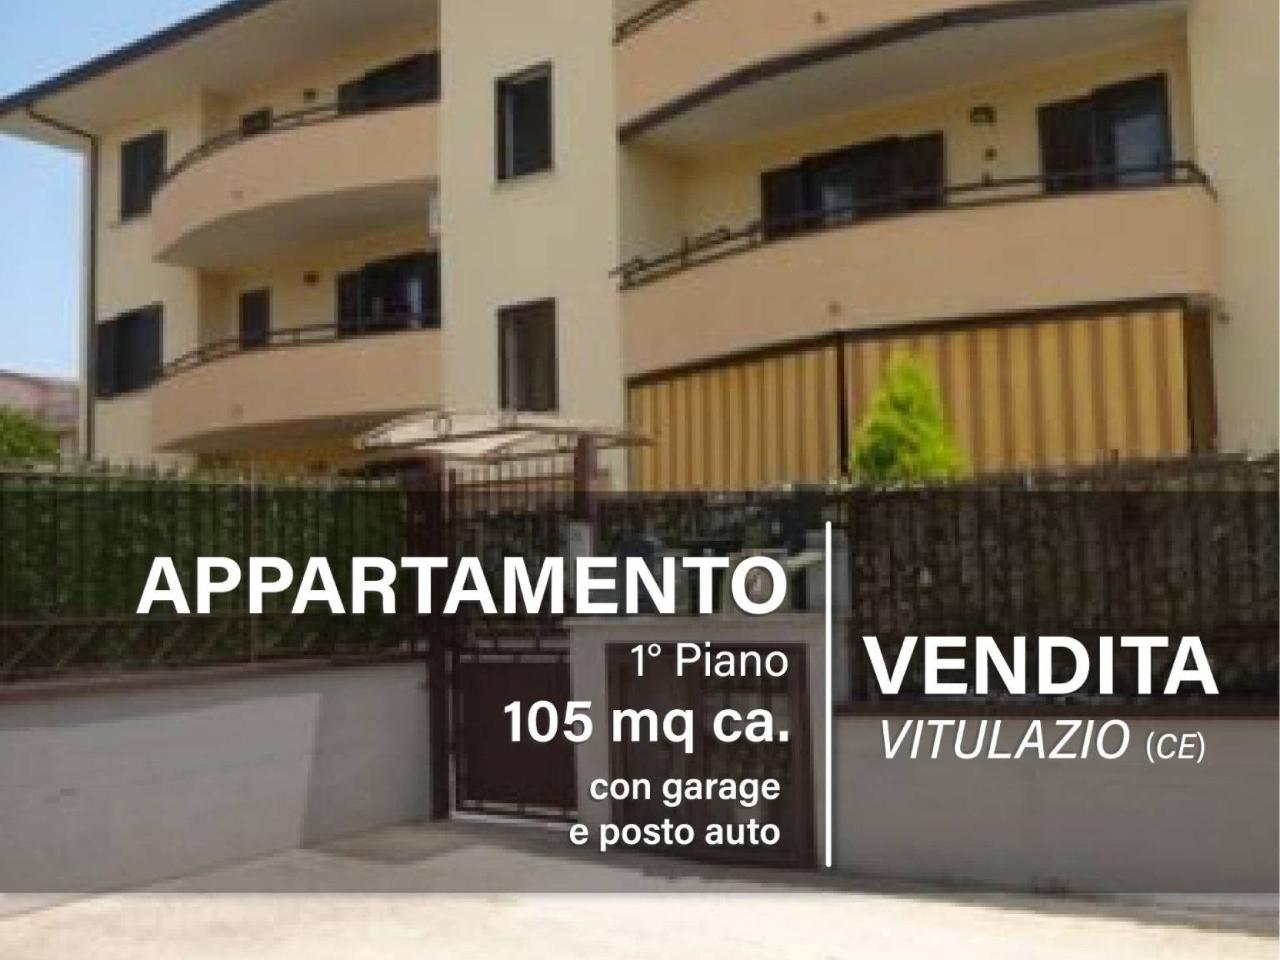 Appartamento in vendita a Vitulazio